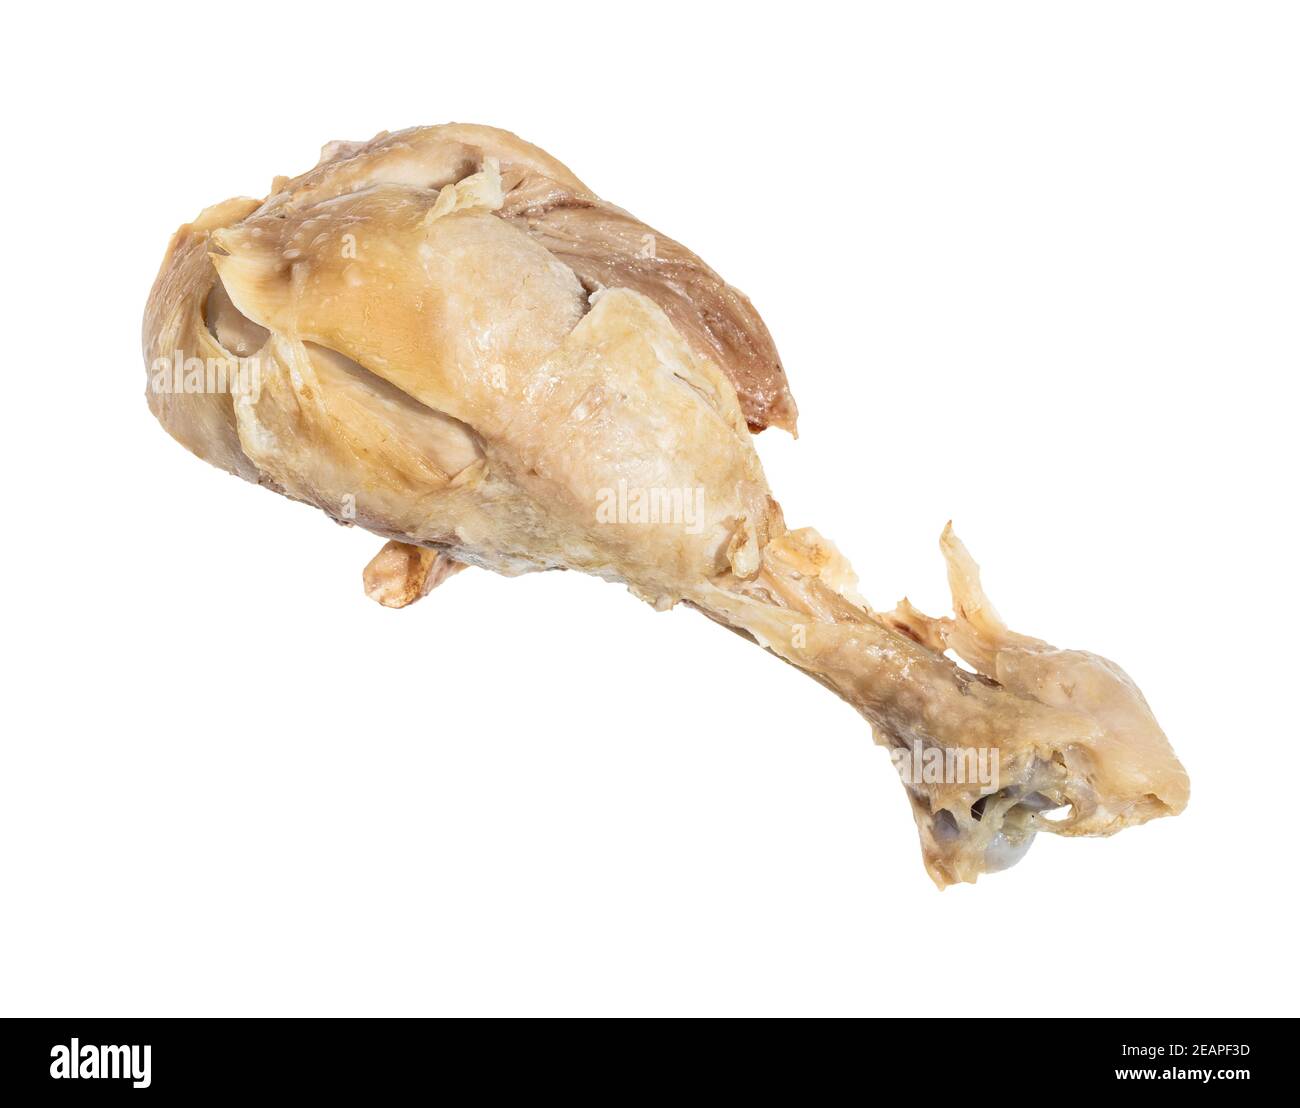 Bengelen bloemblad excelleren single boiled chicken leg isolated on white Stock Photo - Alamy